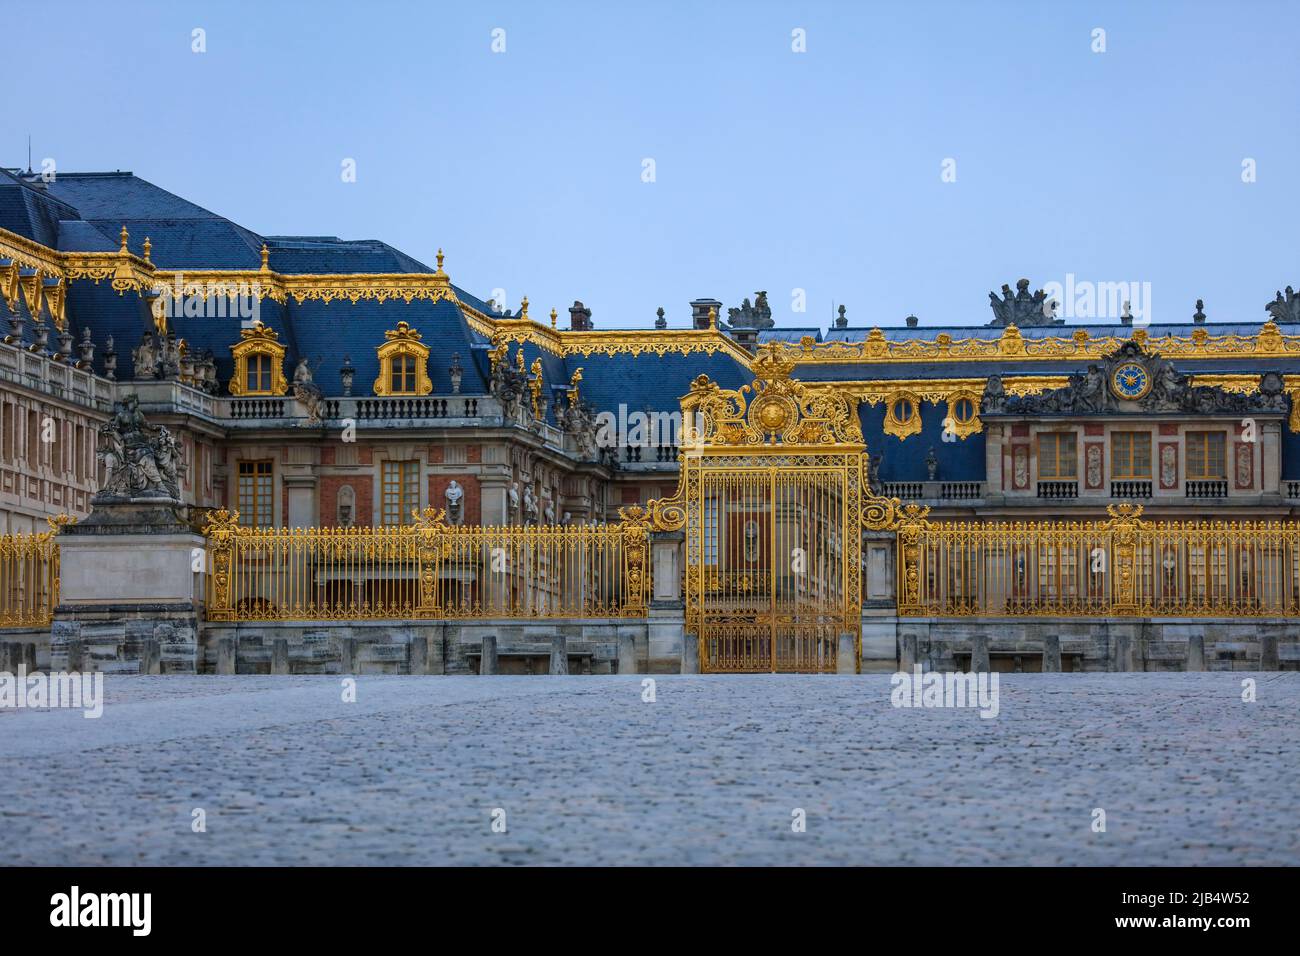 Cour royale, Chateau de Versailles barocco, ex palazzo dei re di Francia, vicino a Parigi, dipartimento degli Yvelines, regione Ile de France, Francia Foto Stock